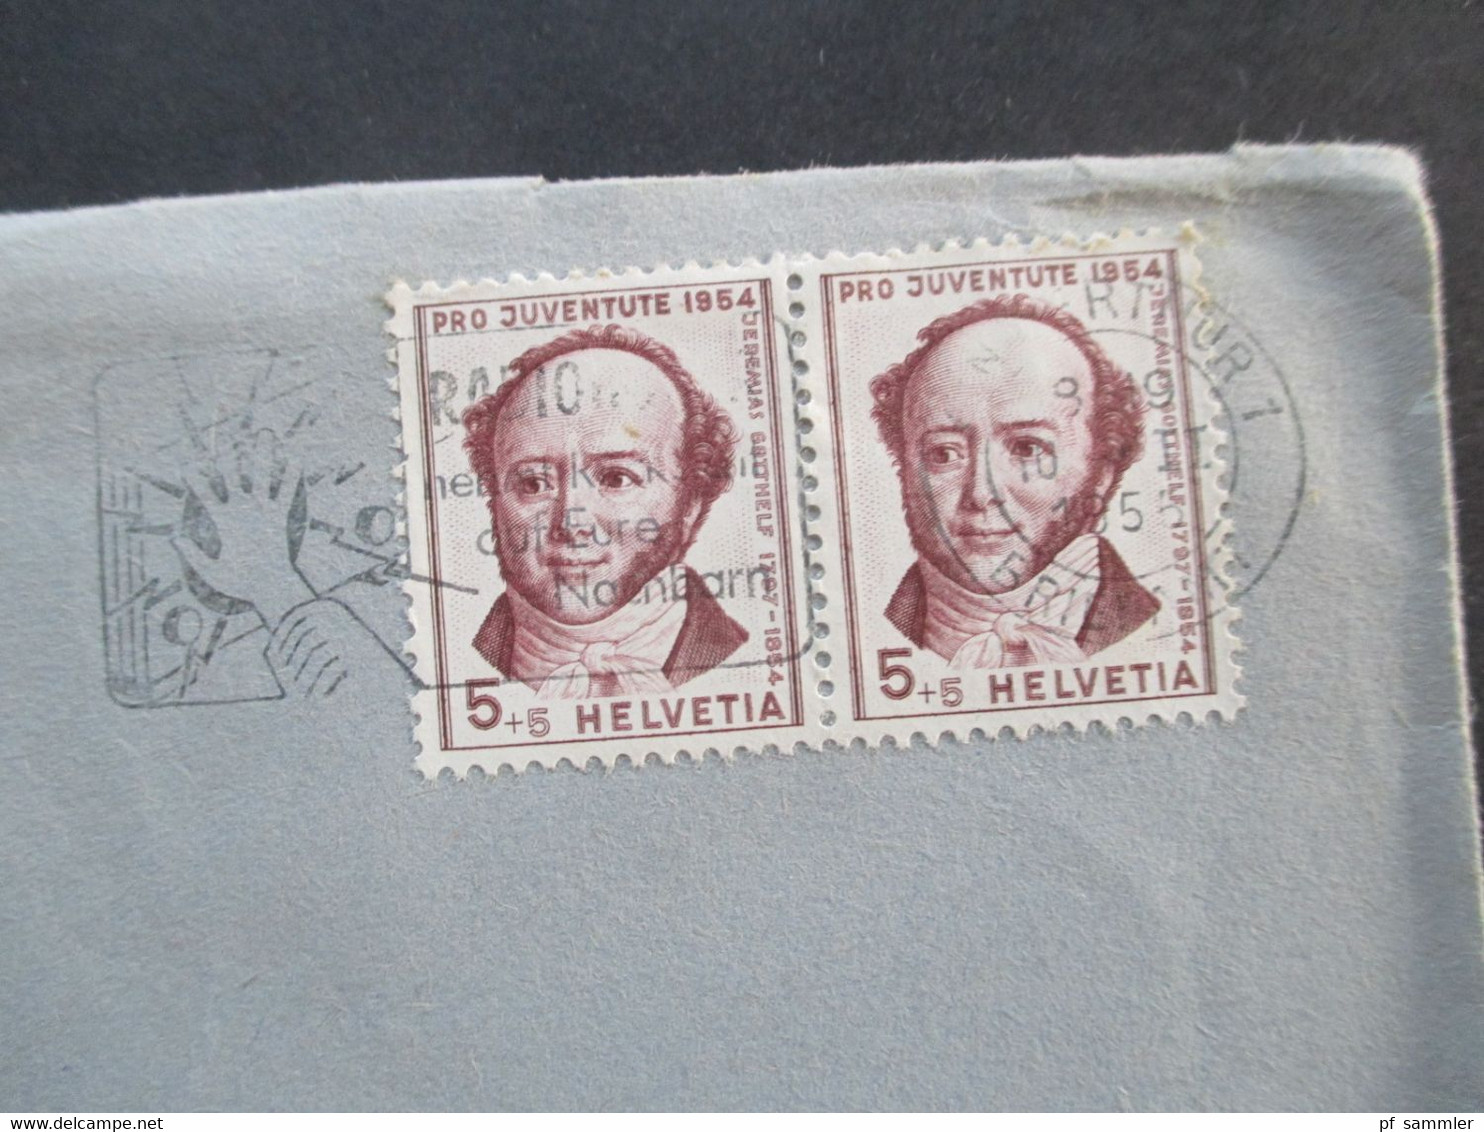 Schweiz 1955 Pro Juventute Nr. 602 MeF Waagerechtes Paar Umschlag Ed. Bühler & Co Winterthur Ortsbrief - Storia Postale